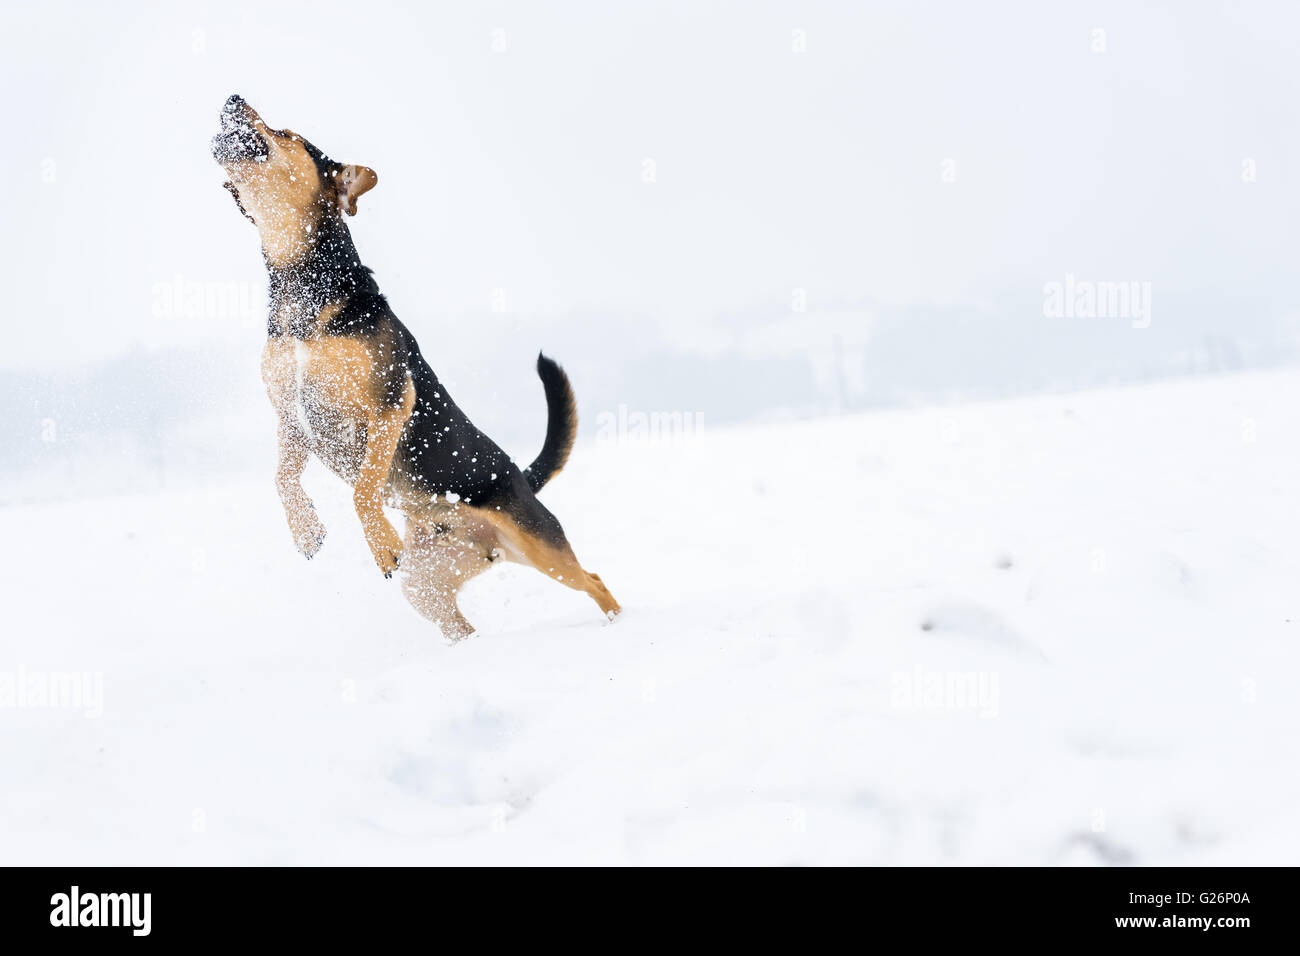 Hund springt in die Luft zu einem Schneeball Stockfoto